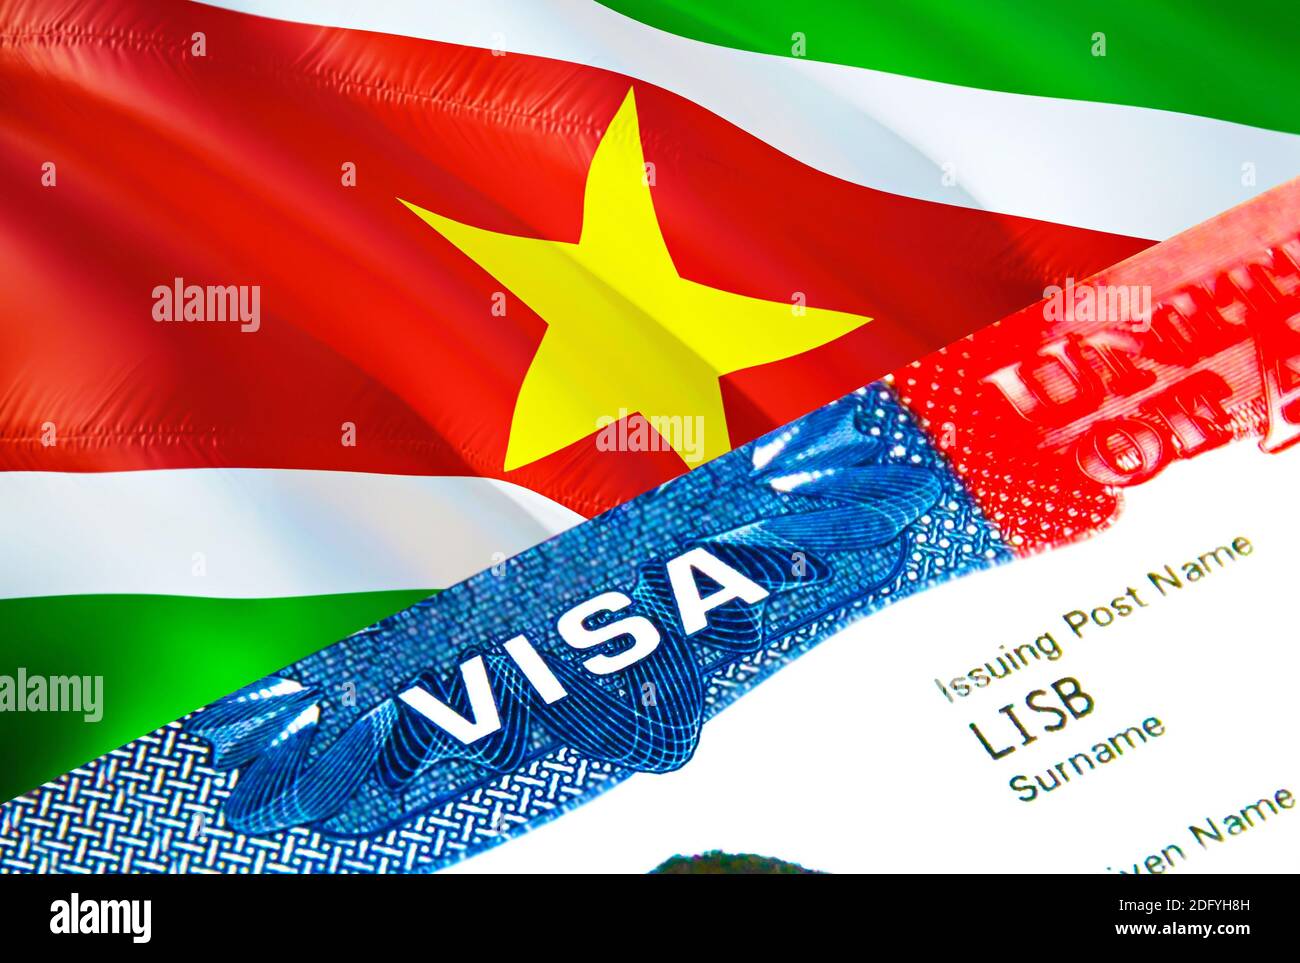 Visa d'immigration du Suriname. Gros plan Visa au Suriname en mettant  l'accent sur le mot VISA, le rendu 3D. Voyage ou migration vers le Suriname  destination concept avec visa Photo Stock -